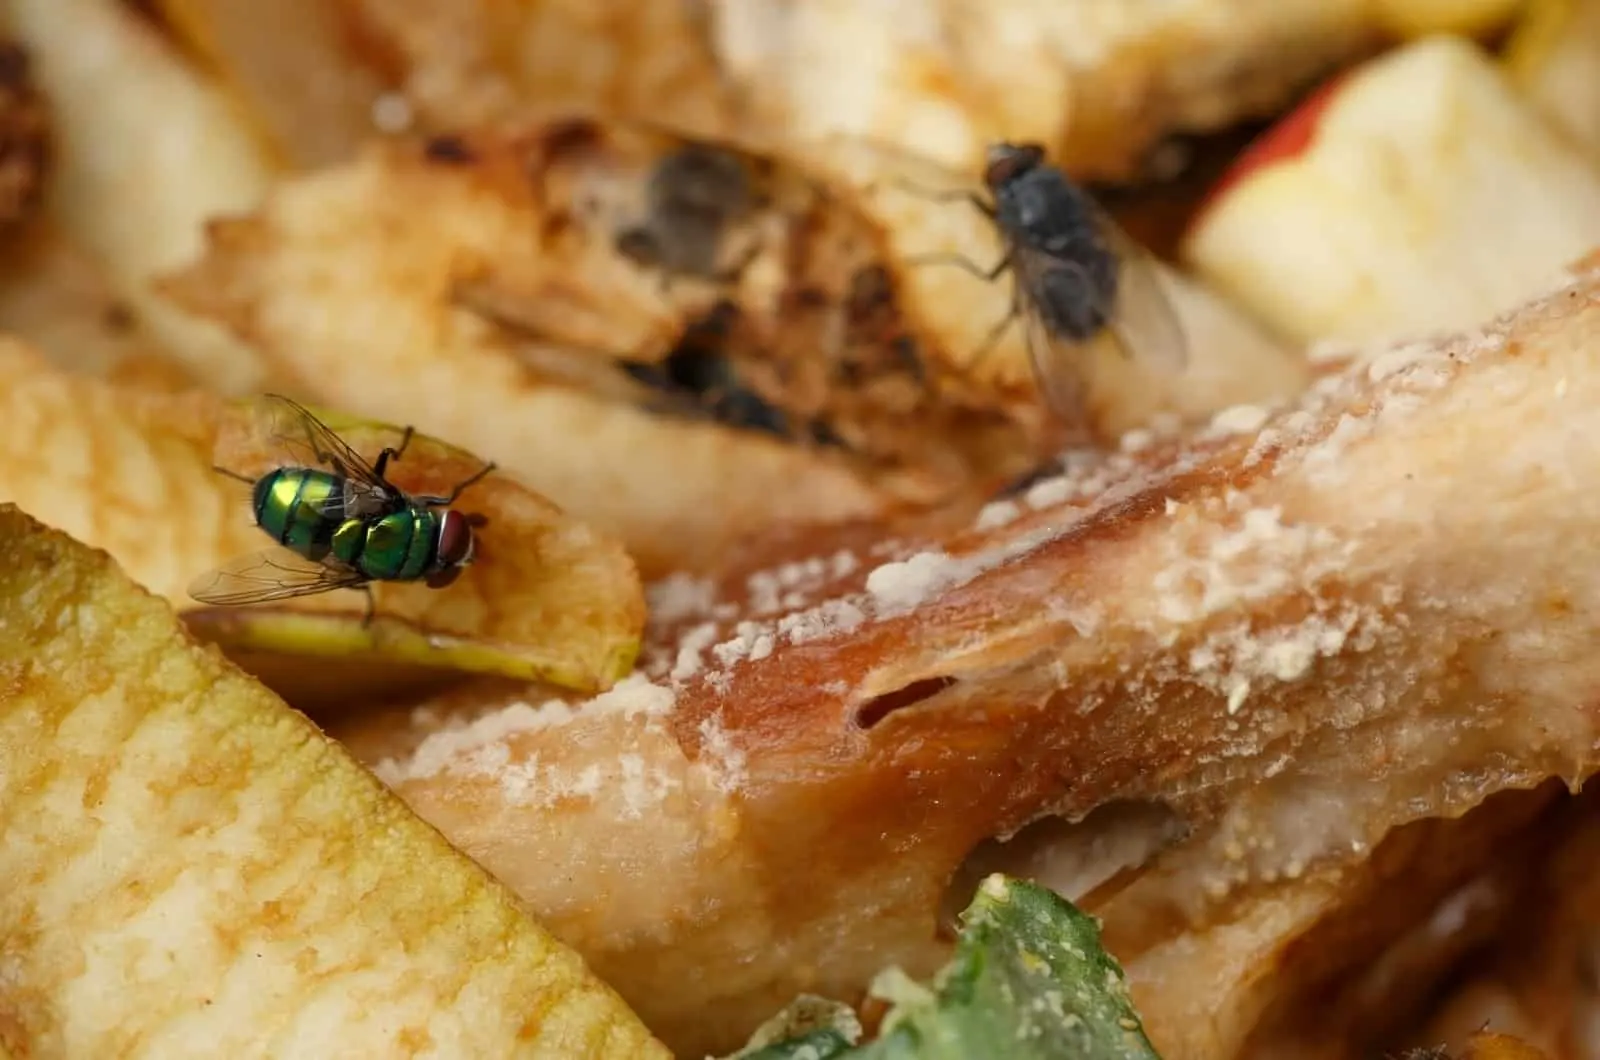 Flies In Compost